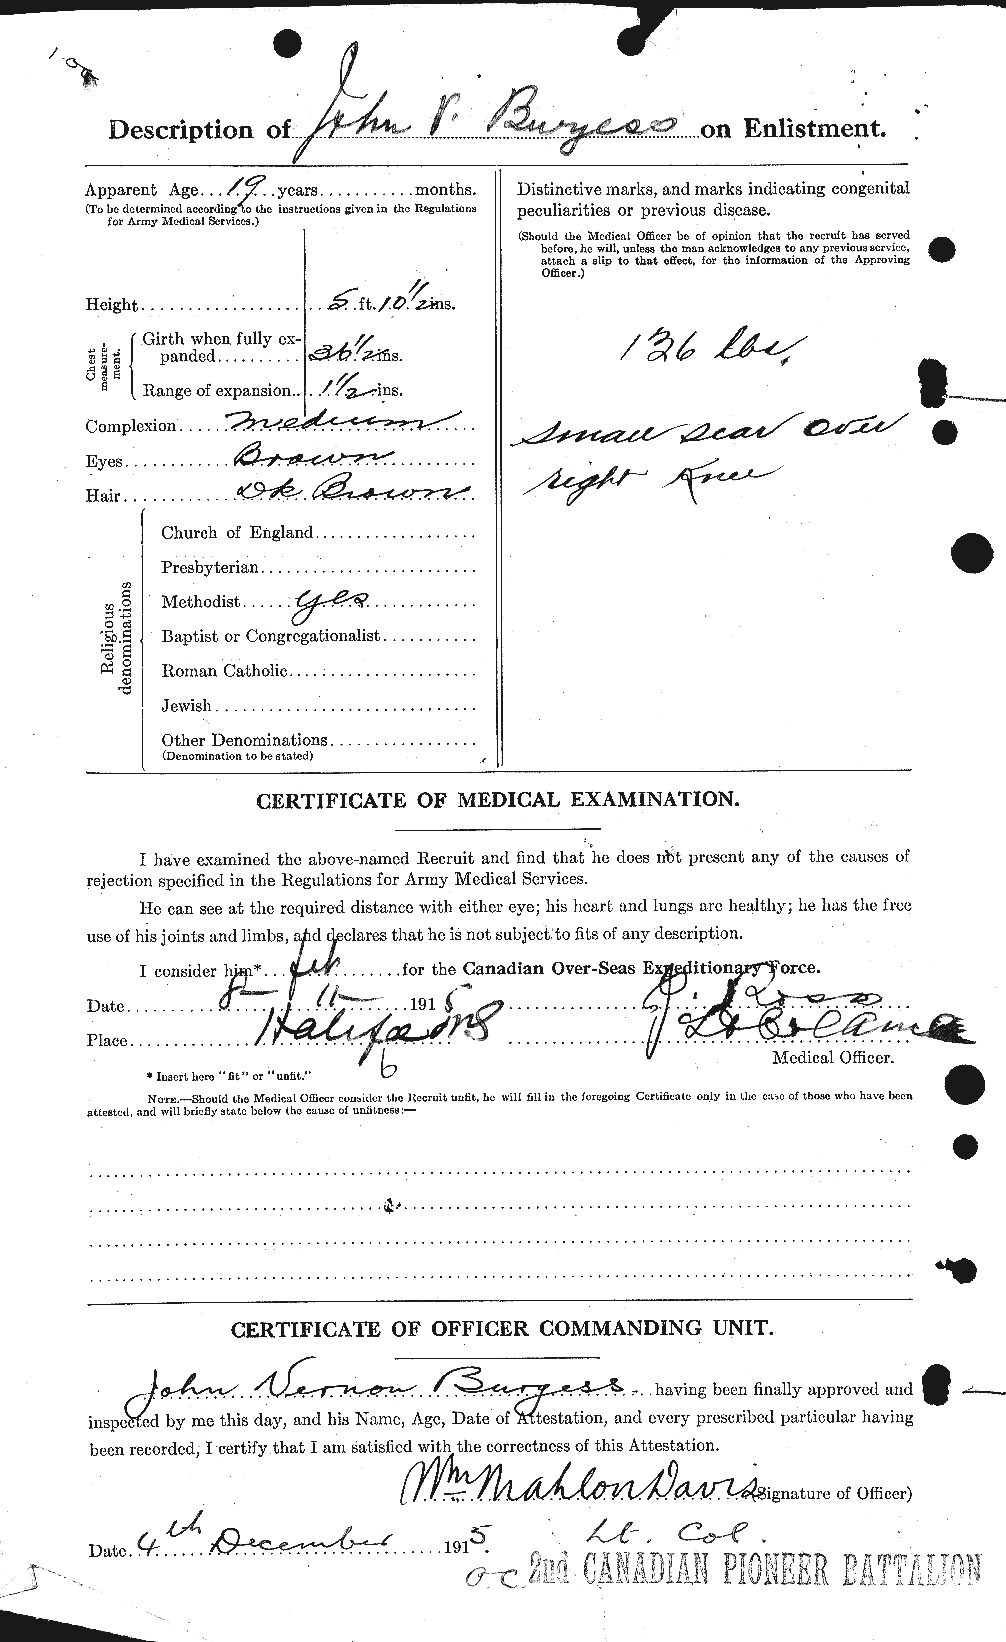 Dossiers du Personnel de la Première Guerre mondiale - CEC 269971b